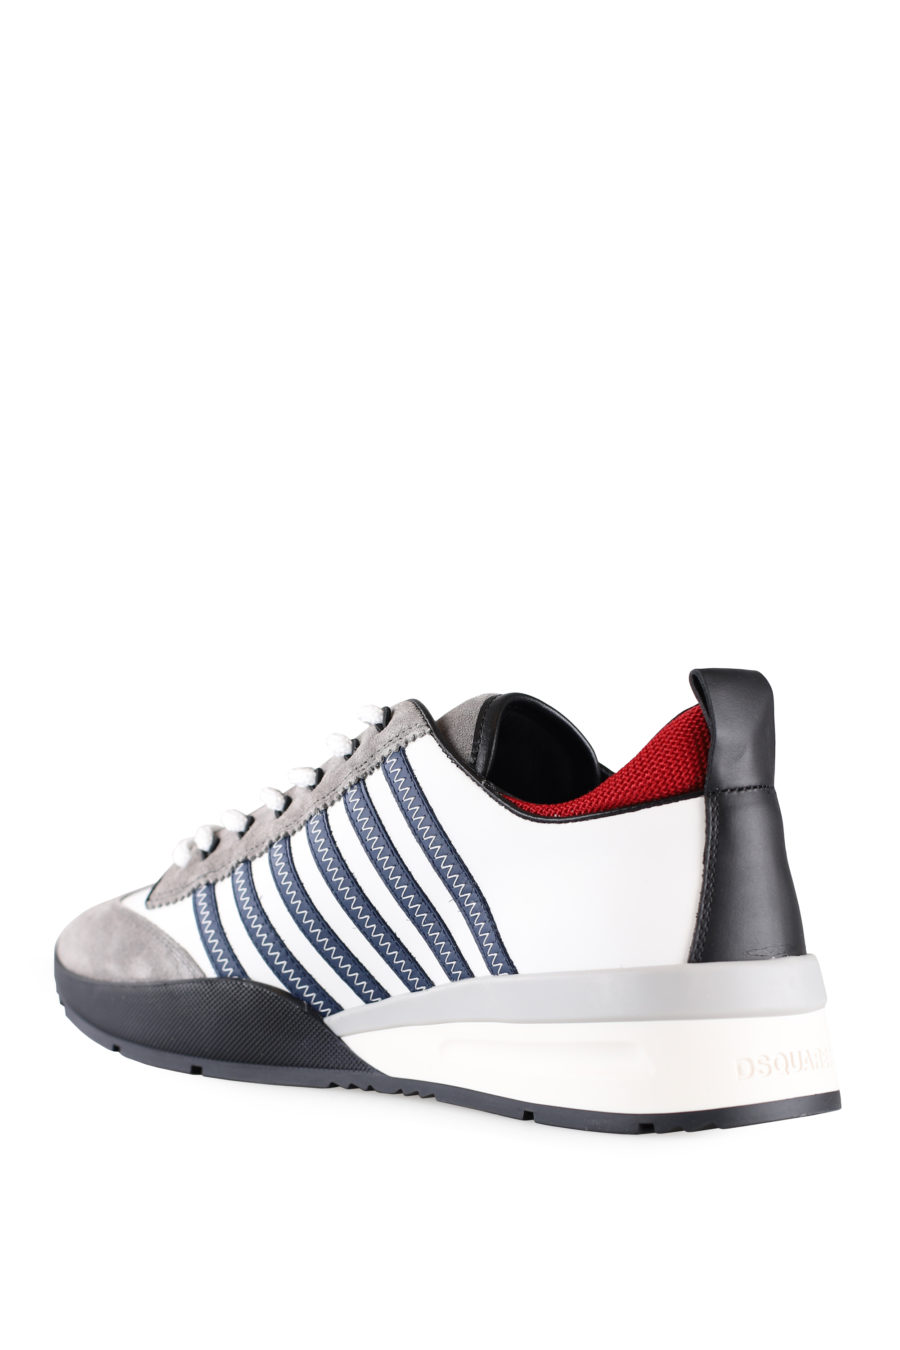 Weiße und graue Turnschuhe mit blauen Linien und roten Details - IMG 0011